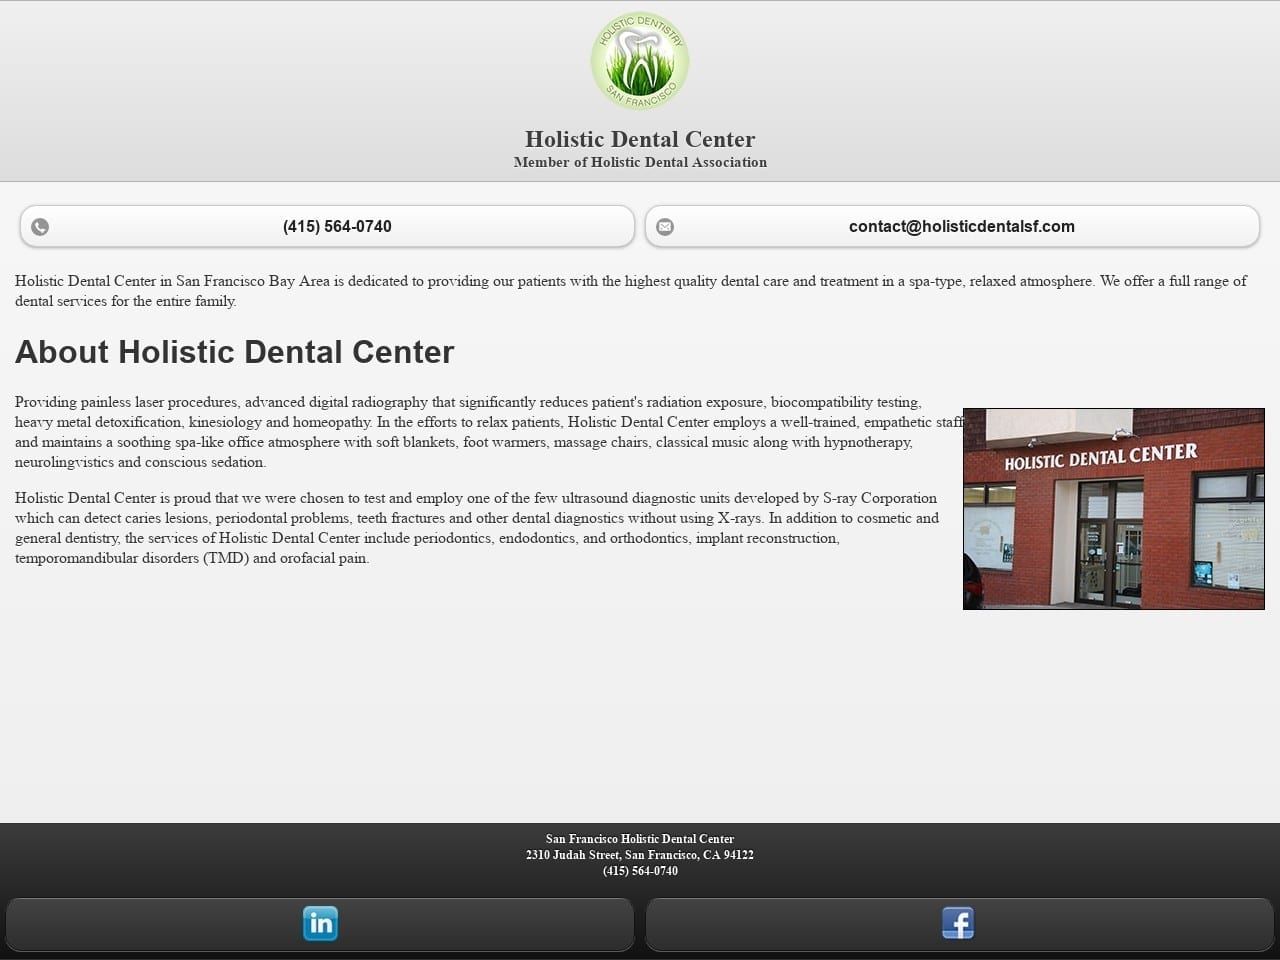 Holistic Dental Center Website Screenshot from holisticdentalsf.com